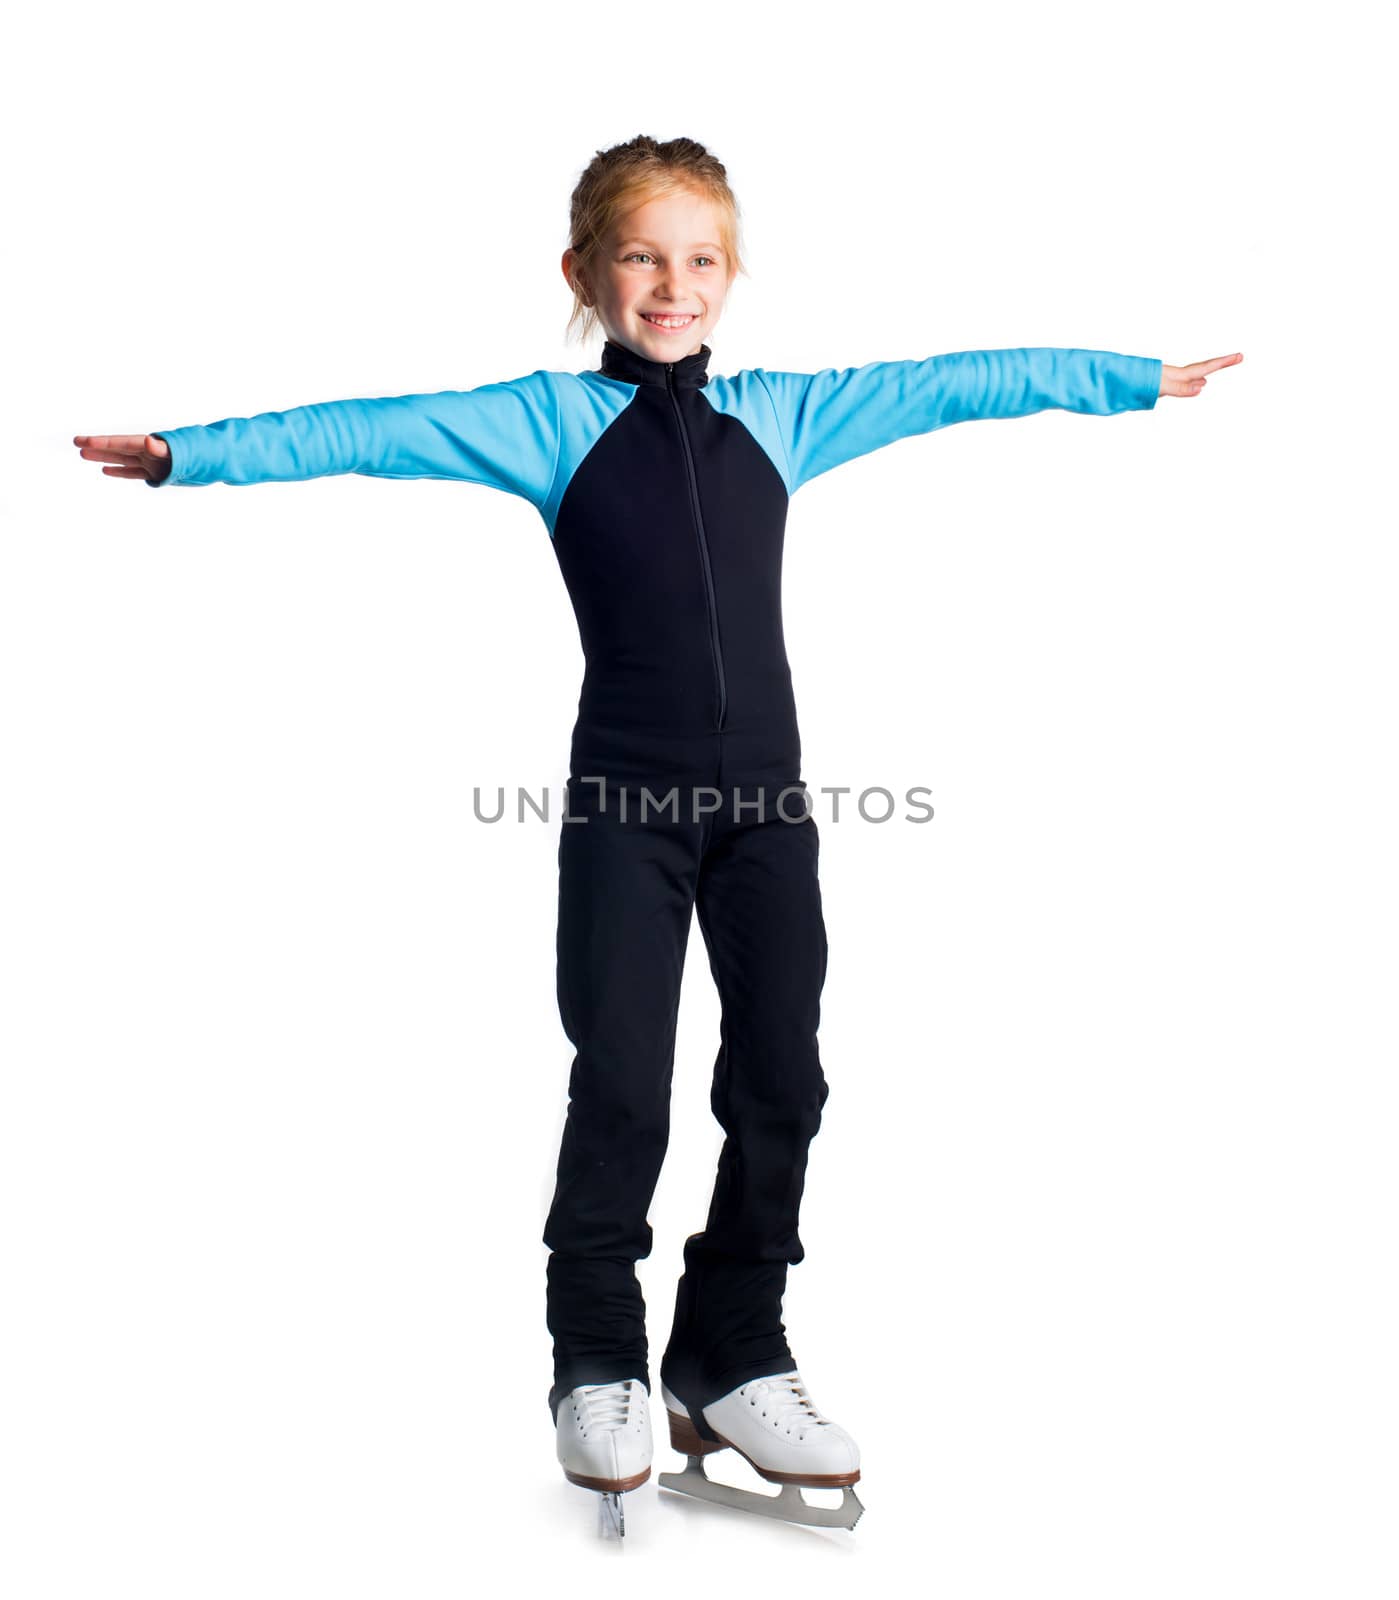 Little girl with skates by GekaSkr